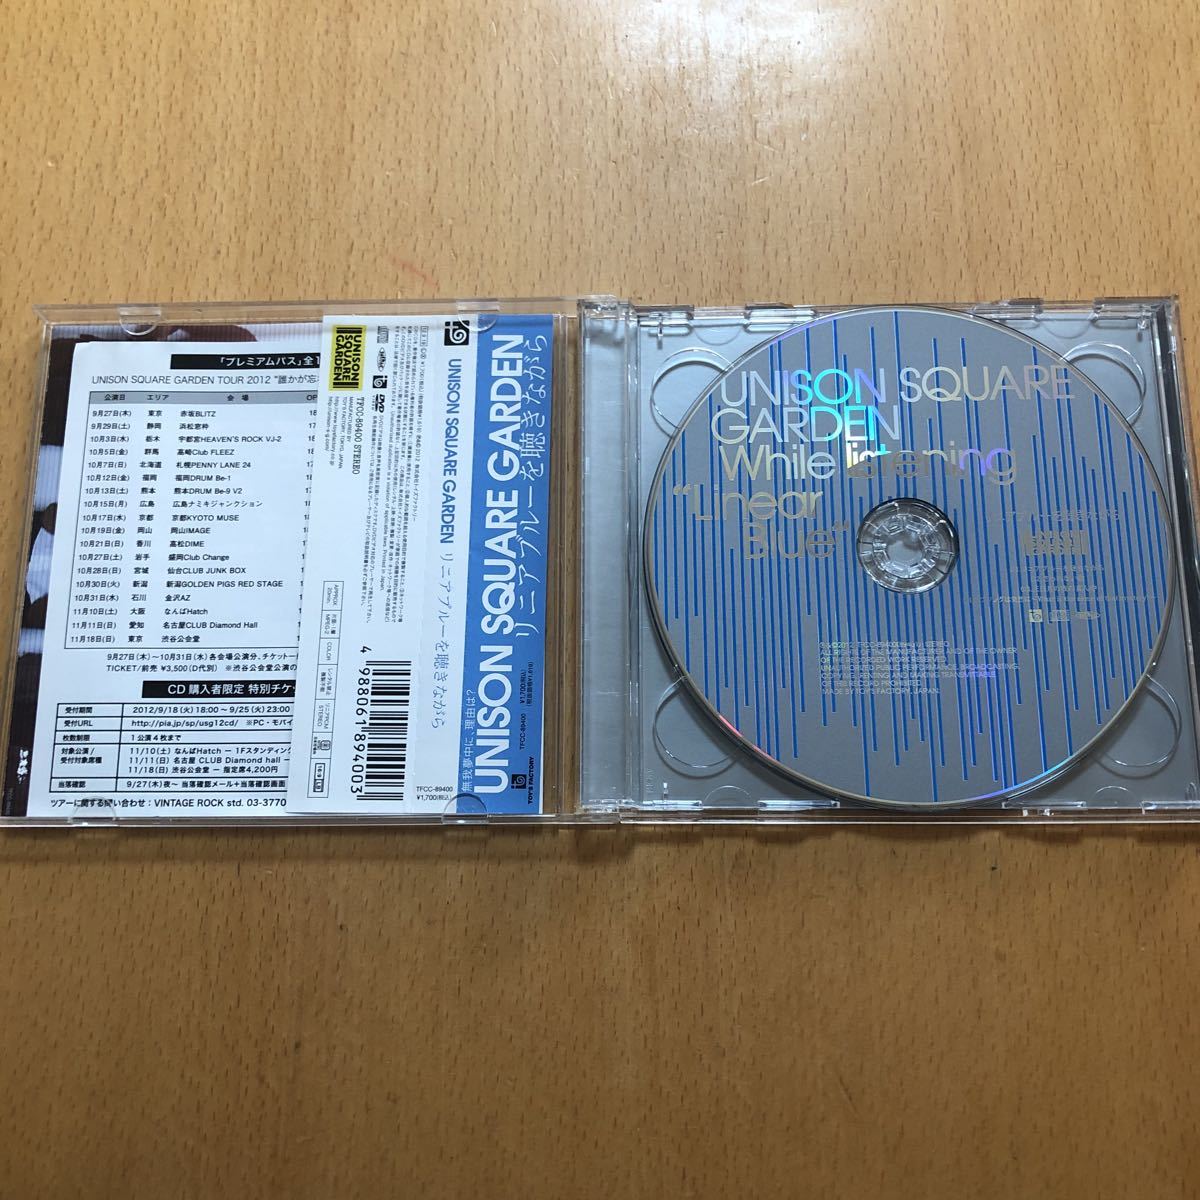 216円 最大70%OFFクーポン UNISON SQUARE GARDEN CD リニアブルーを聴きながら 初回限定盤 DVD付